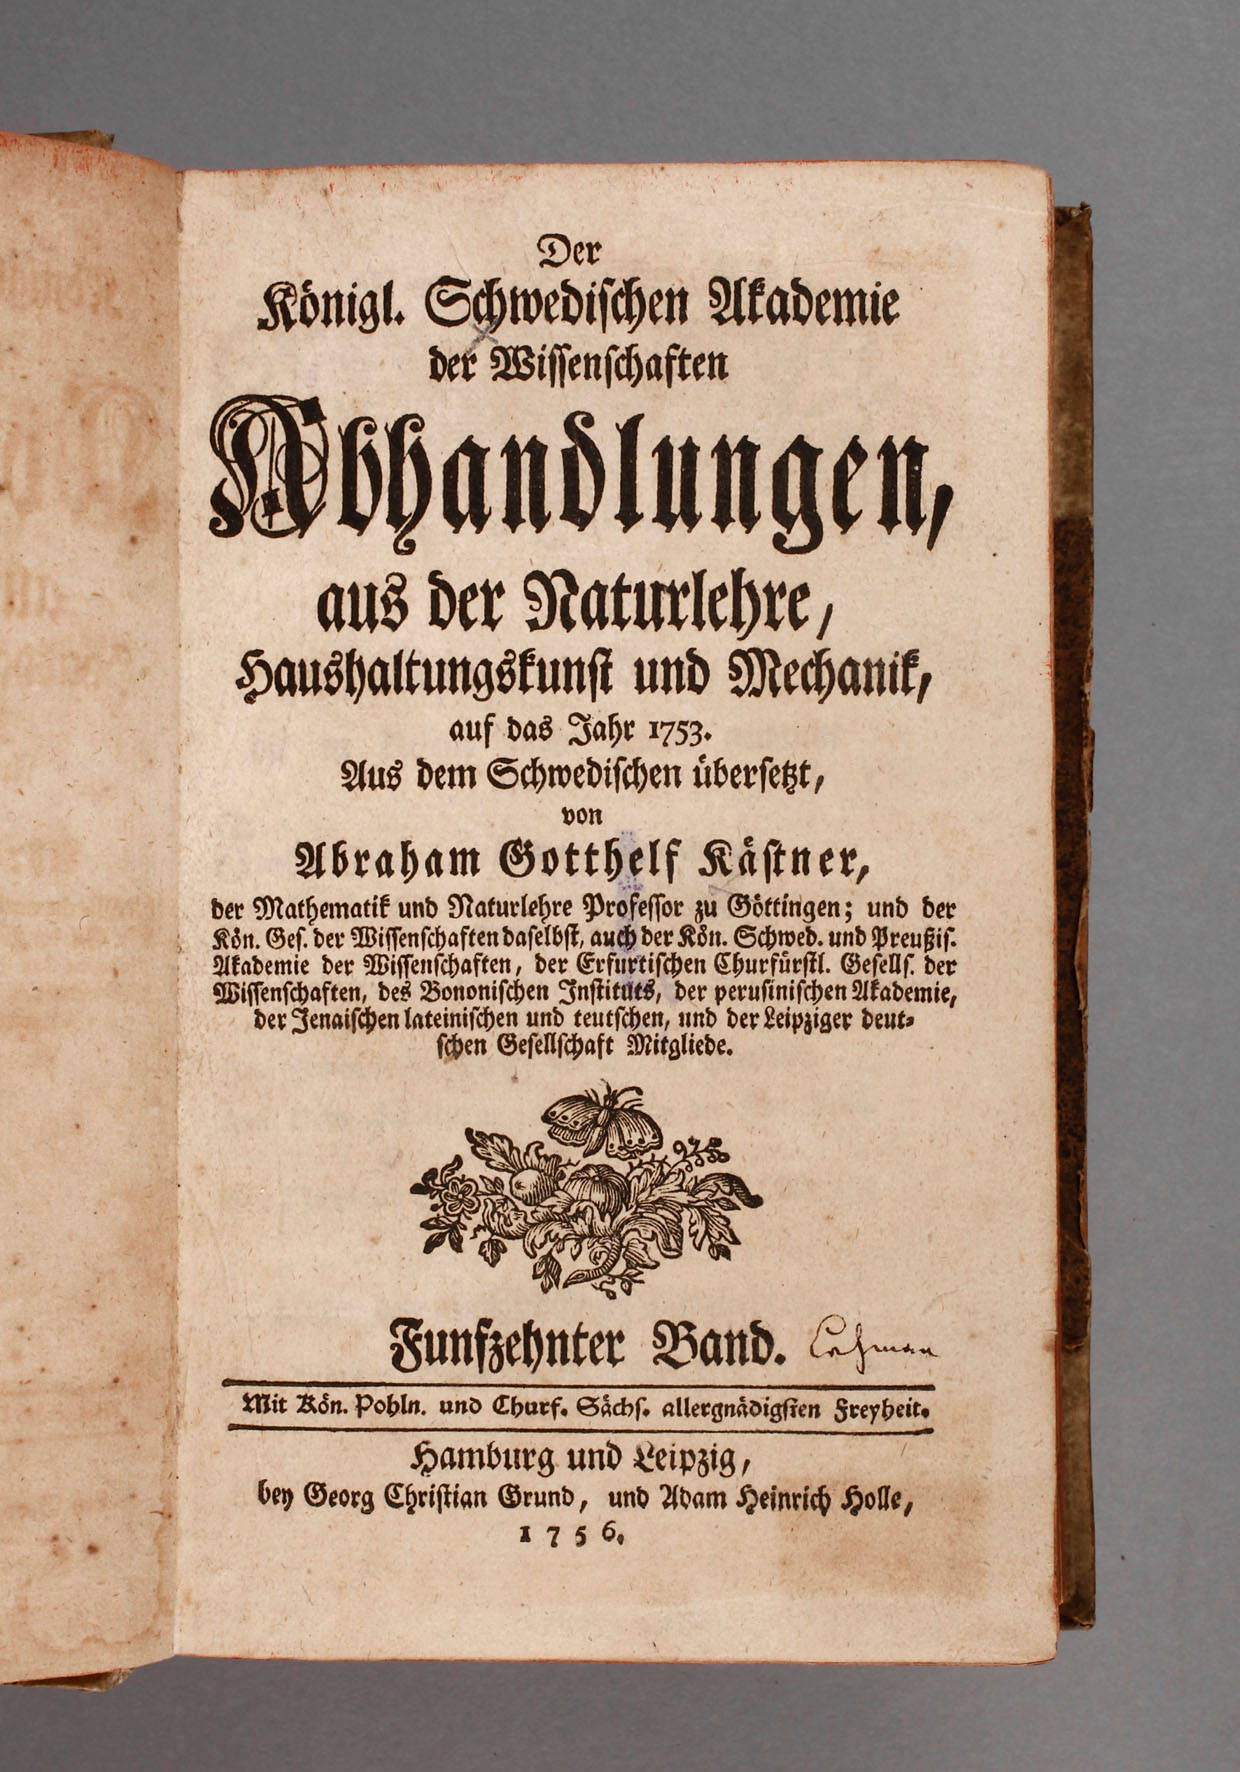 Abhandlungen der Schwedischen Akademie 1756